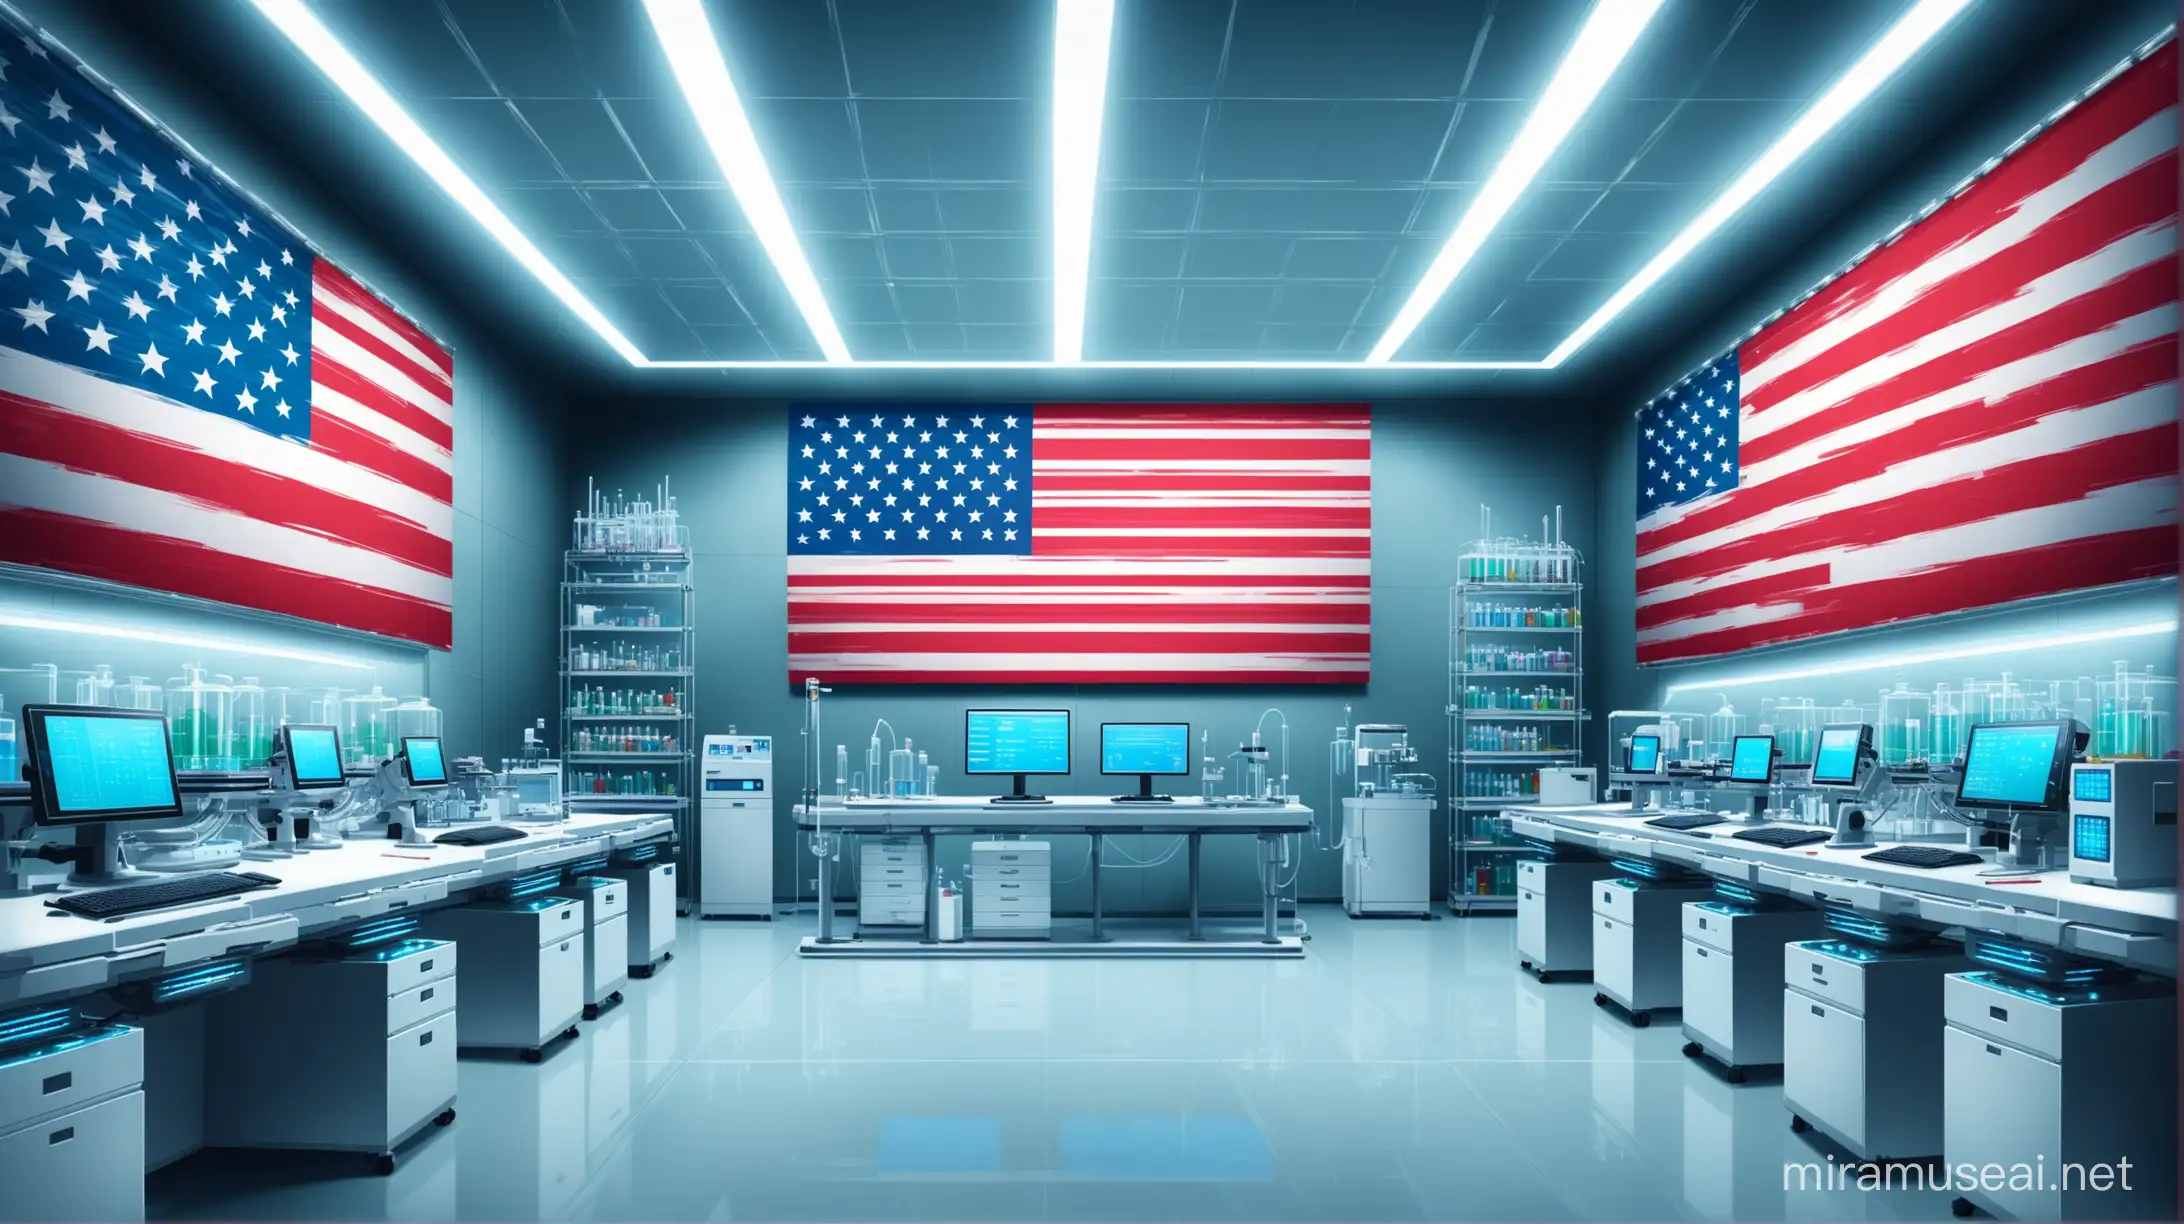 Futuristic USA Flag in Magical Laboratory Setting